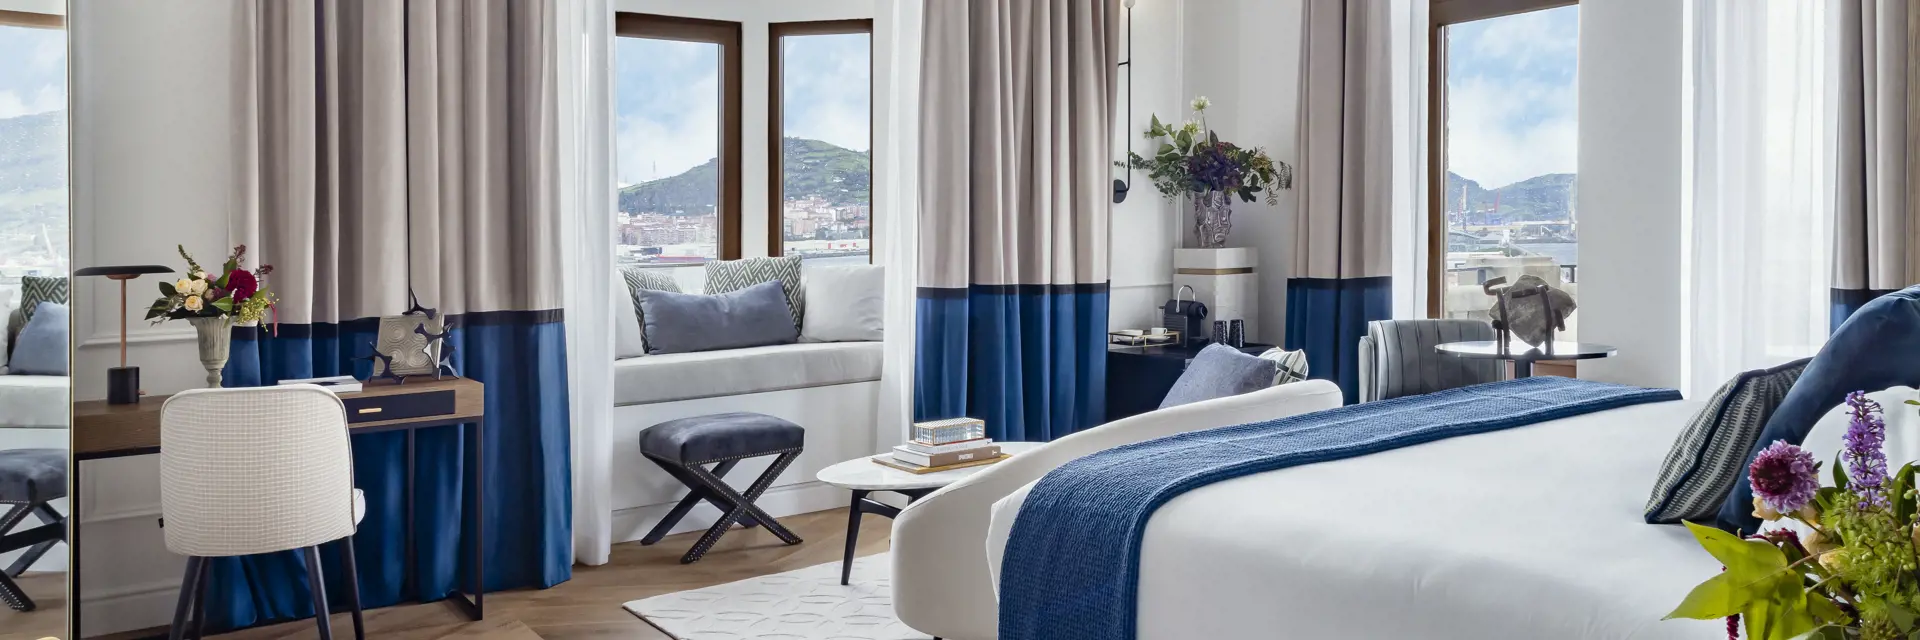 6 palacio arriluce hotel marina suite habitacion vistas mar cantabrico getxo bilbao